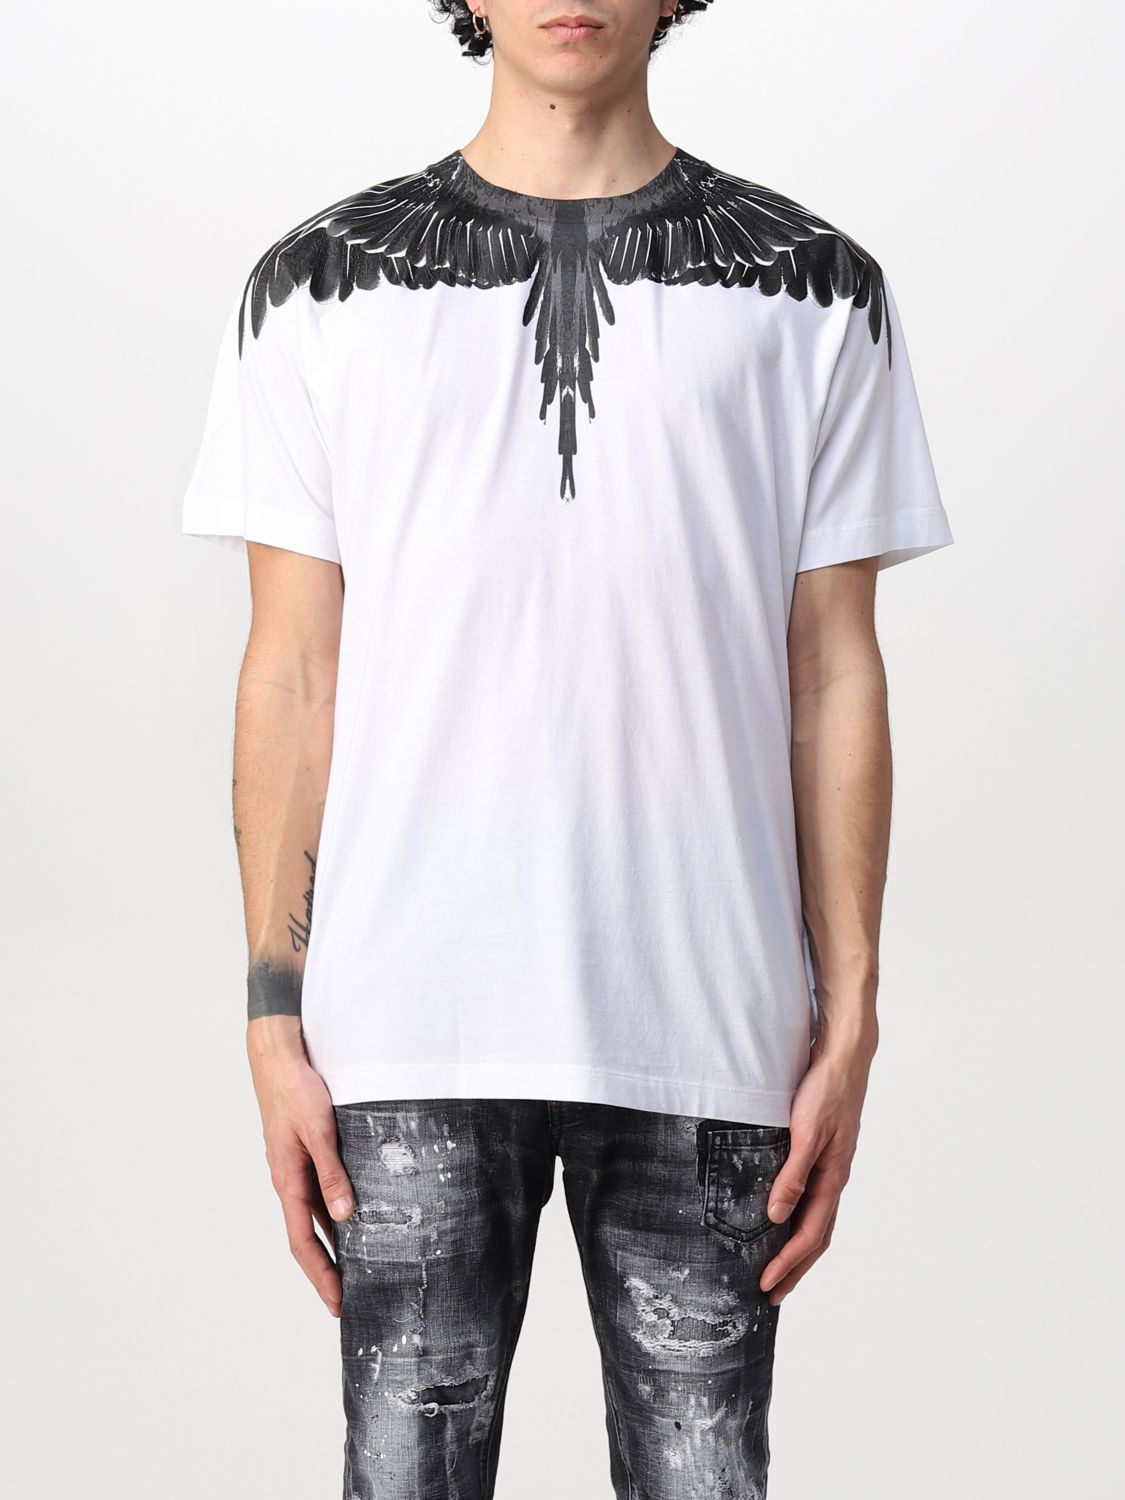 Regnfuld Umoderne Overhale MARCELO BURLON: t-shirt for man - White | Marcelo Burlon t-shirt  CMAA018C99JER0010110 online at GIGLIO.COM